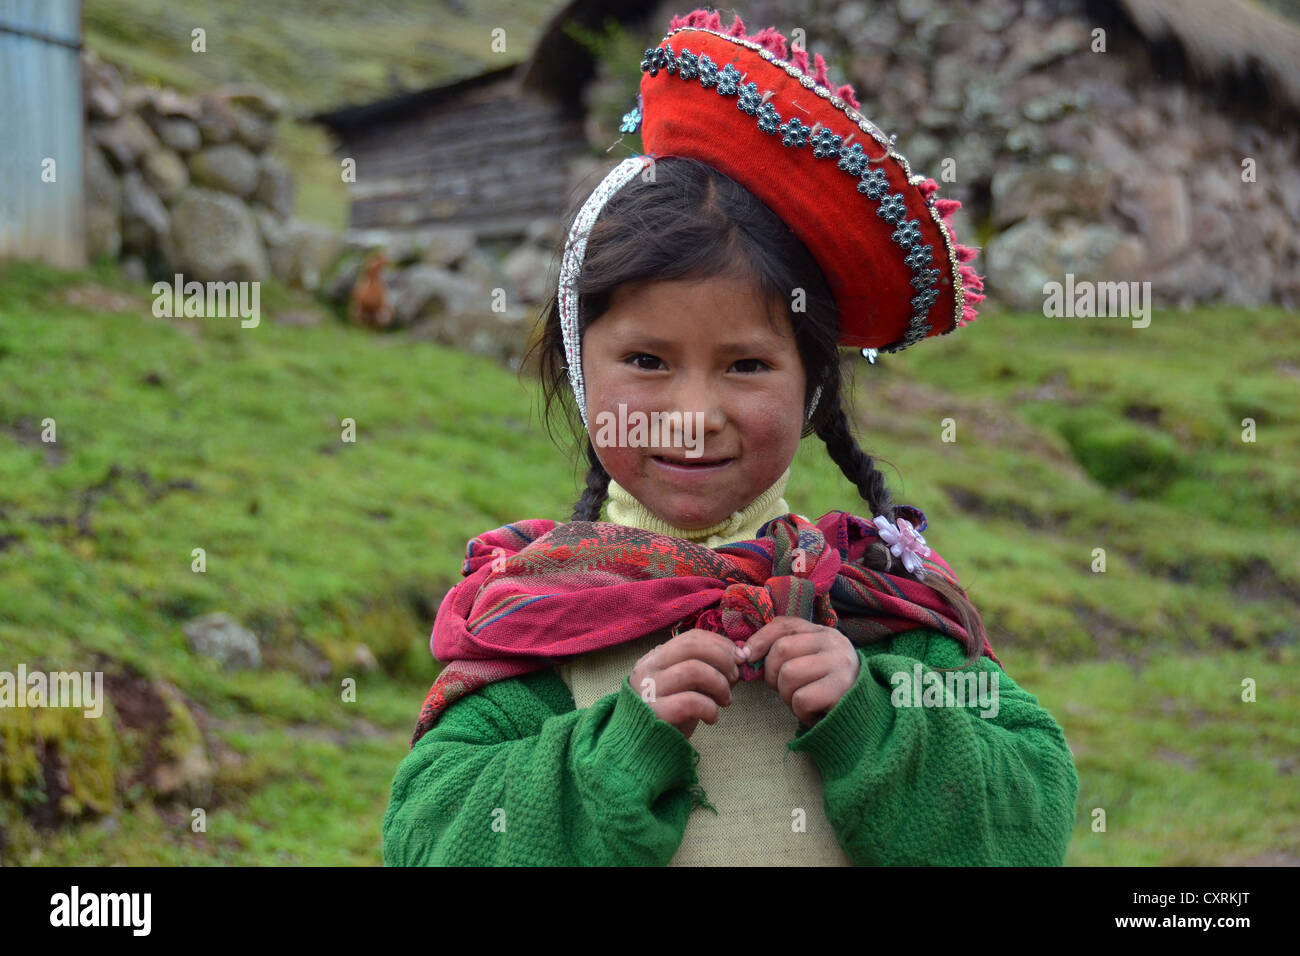 Traditionell gekleidete Indio Mädchen in den Anden, in der Nähe von Cuzco, Peru, Südamerika Stockfoto